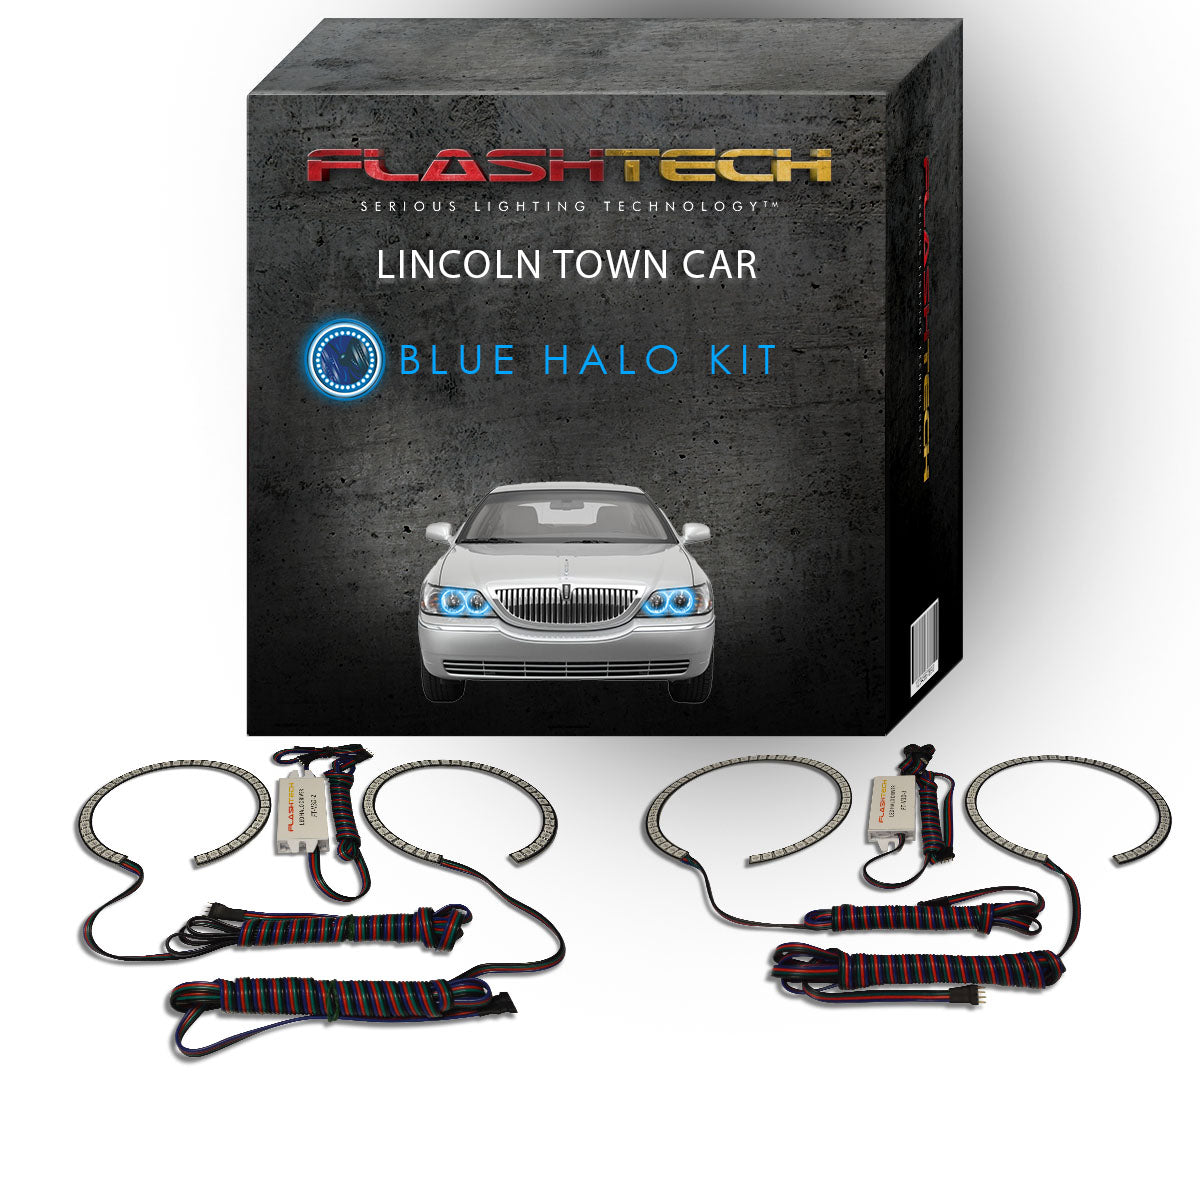 Lincoln-Town Car-2005, 2006, 2007, 2008, 2009, 2010, 2011-LED-Halo-Headlights-RGB-No Remote-LI-TC0511-V3H